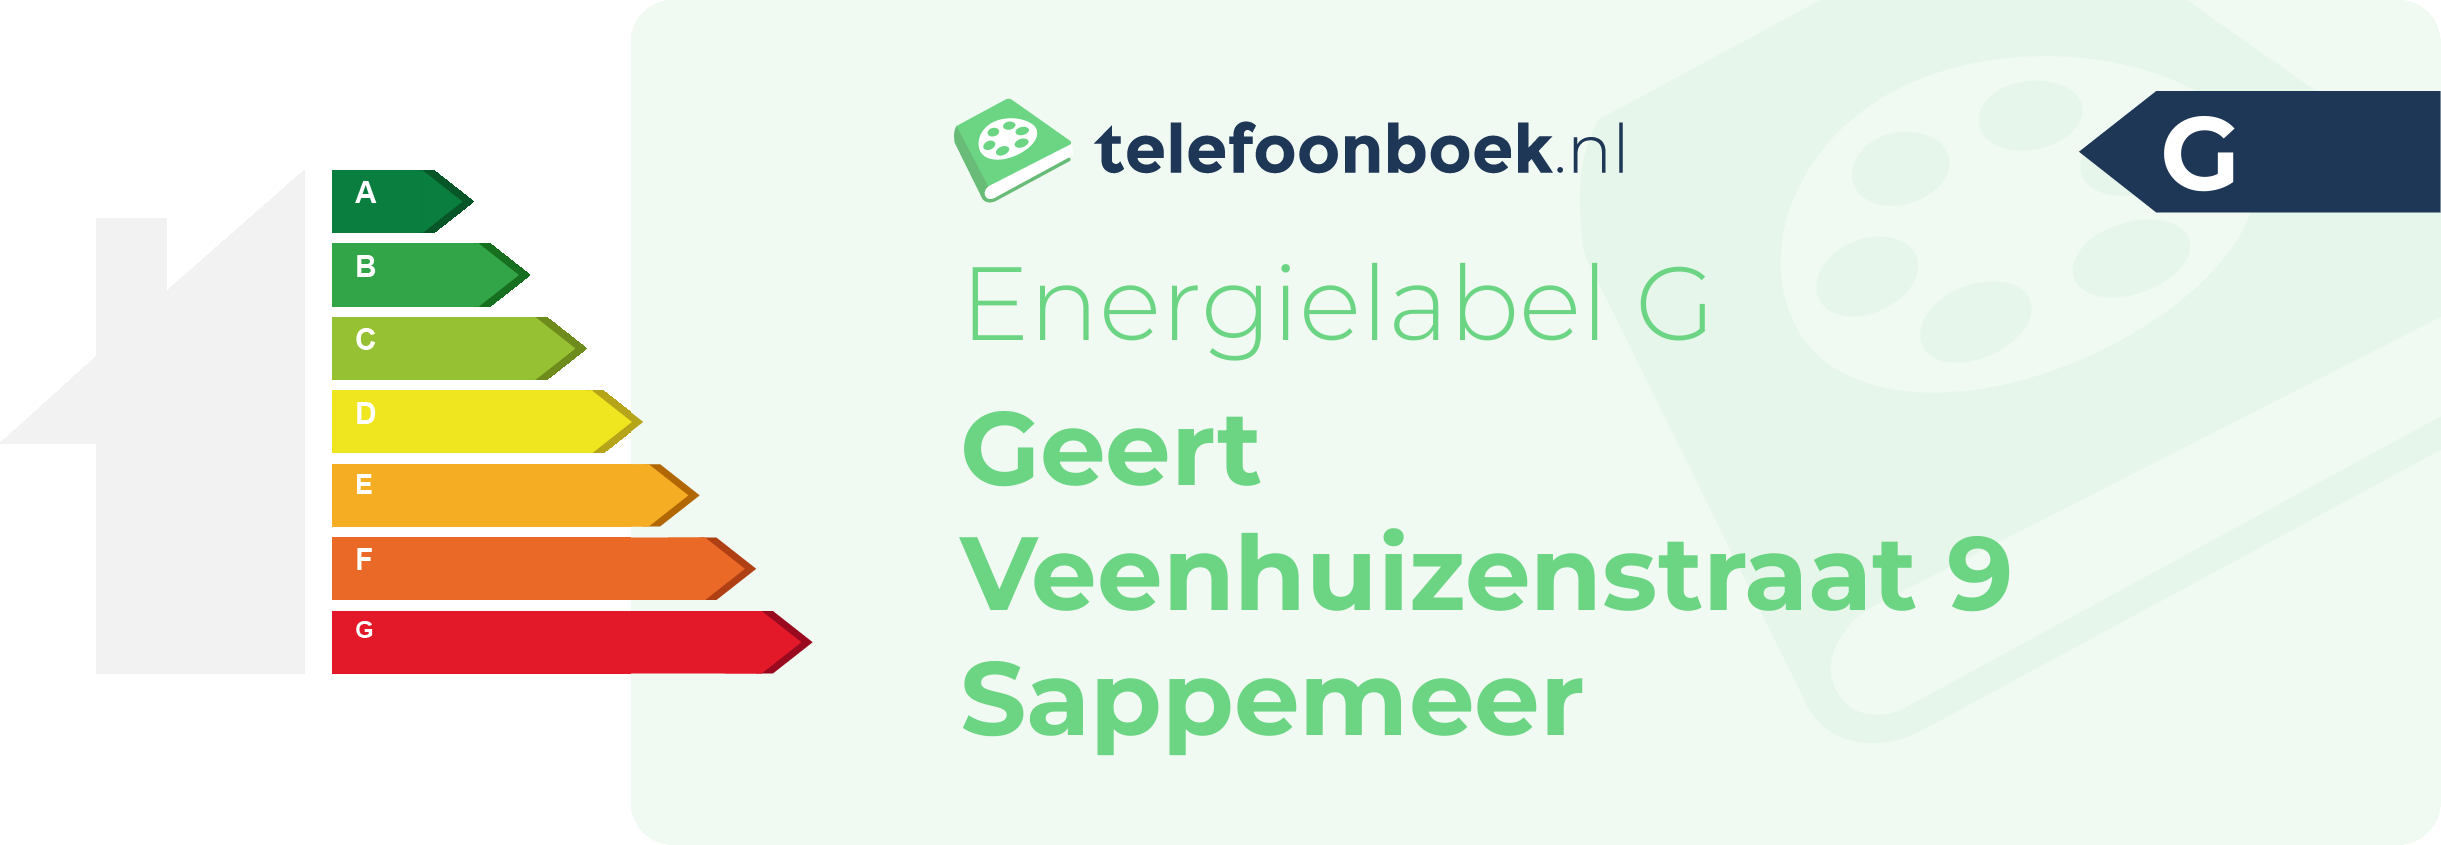 Energielabel Geert Veenhuizenstraat 9 Sappemeer